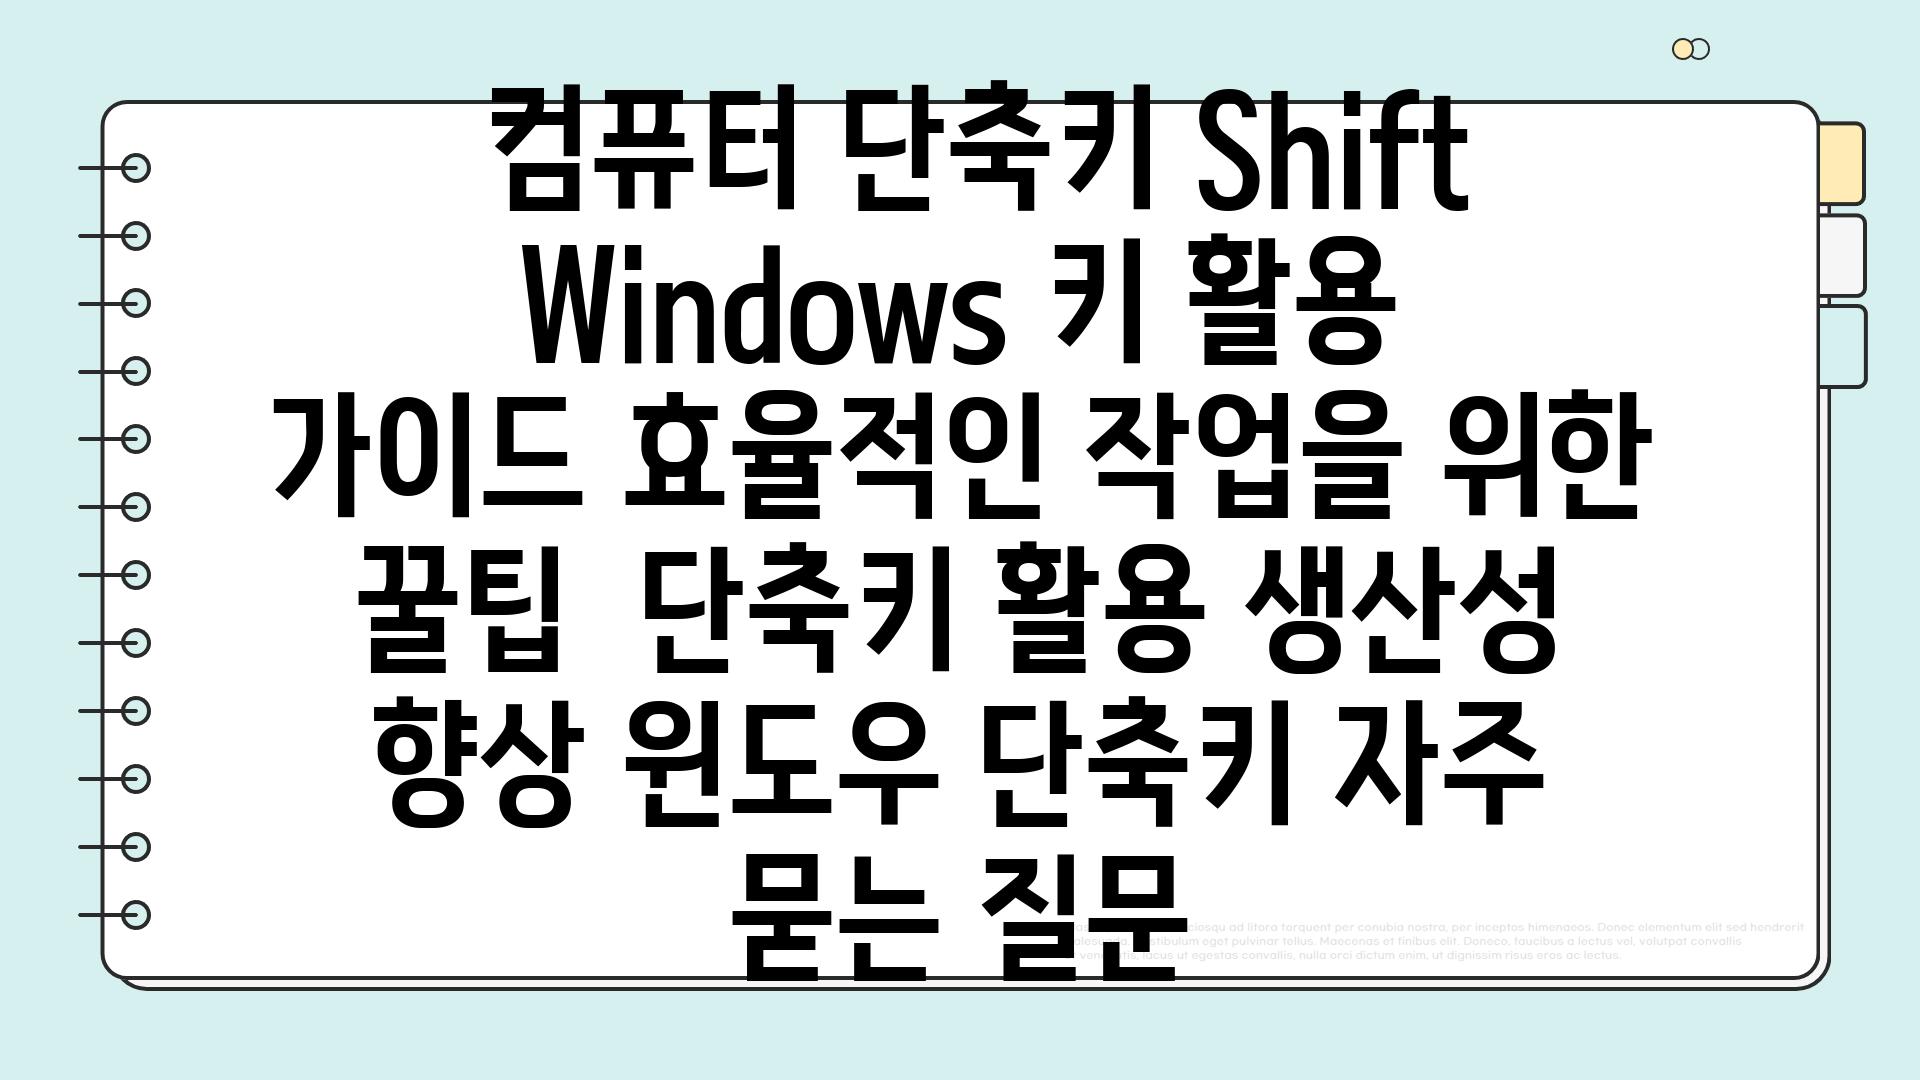  컴퓨터 단축키 Shift  Windows 키 활용 가이드 효율적인 작업을 위한 꿀팁  단축키 활용 생산성 향상 윈도우 단축키 자주 묻는 질문